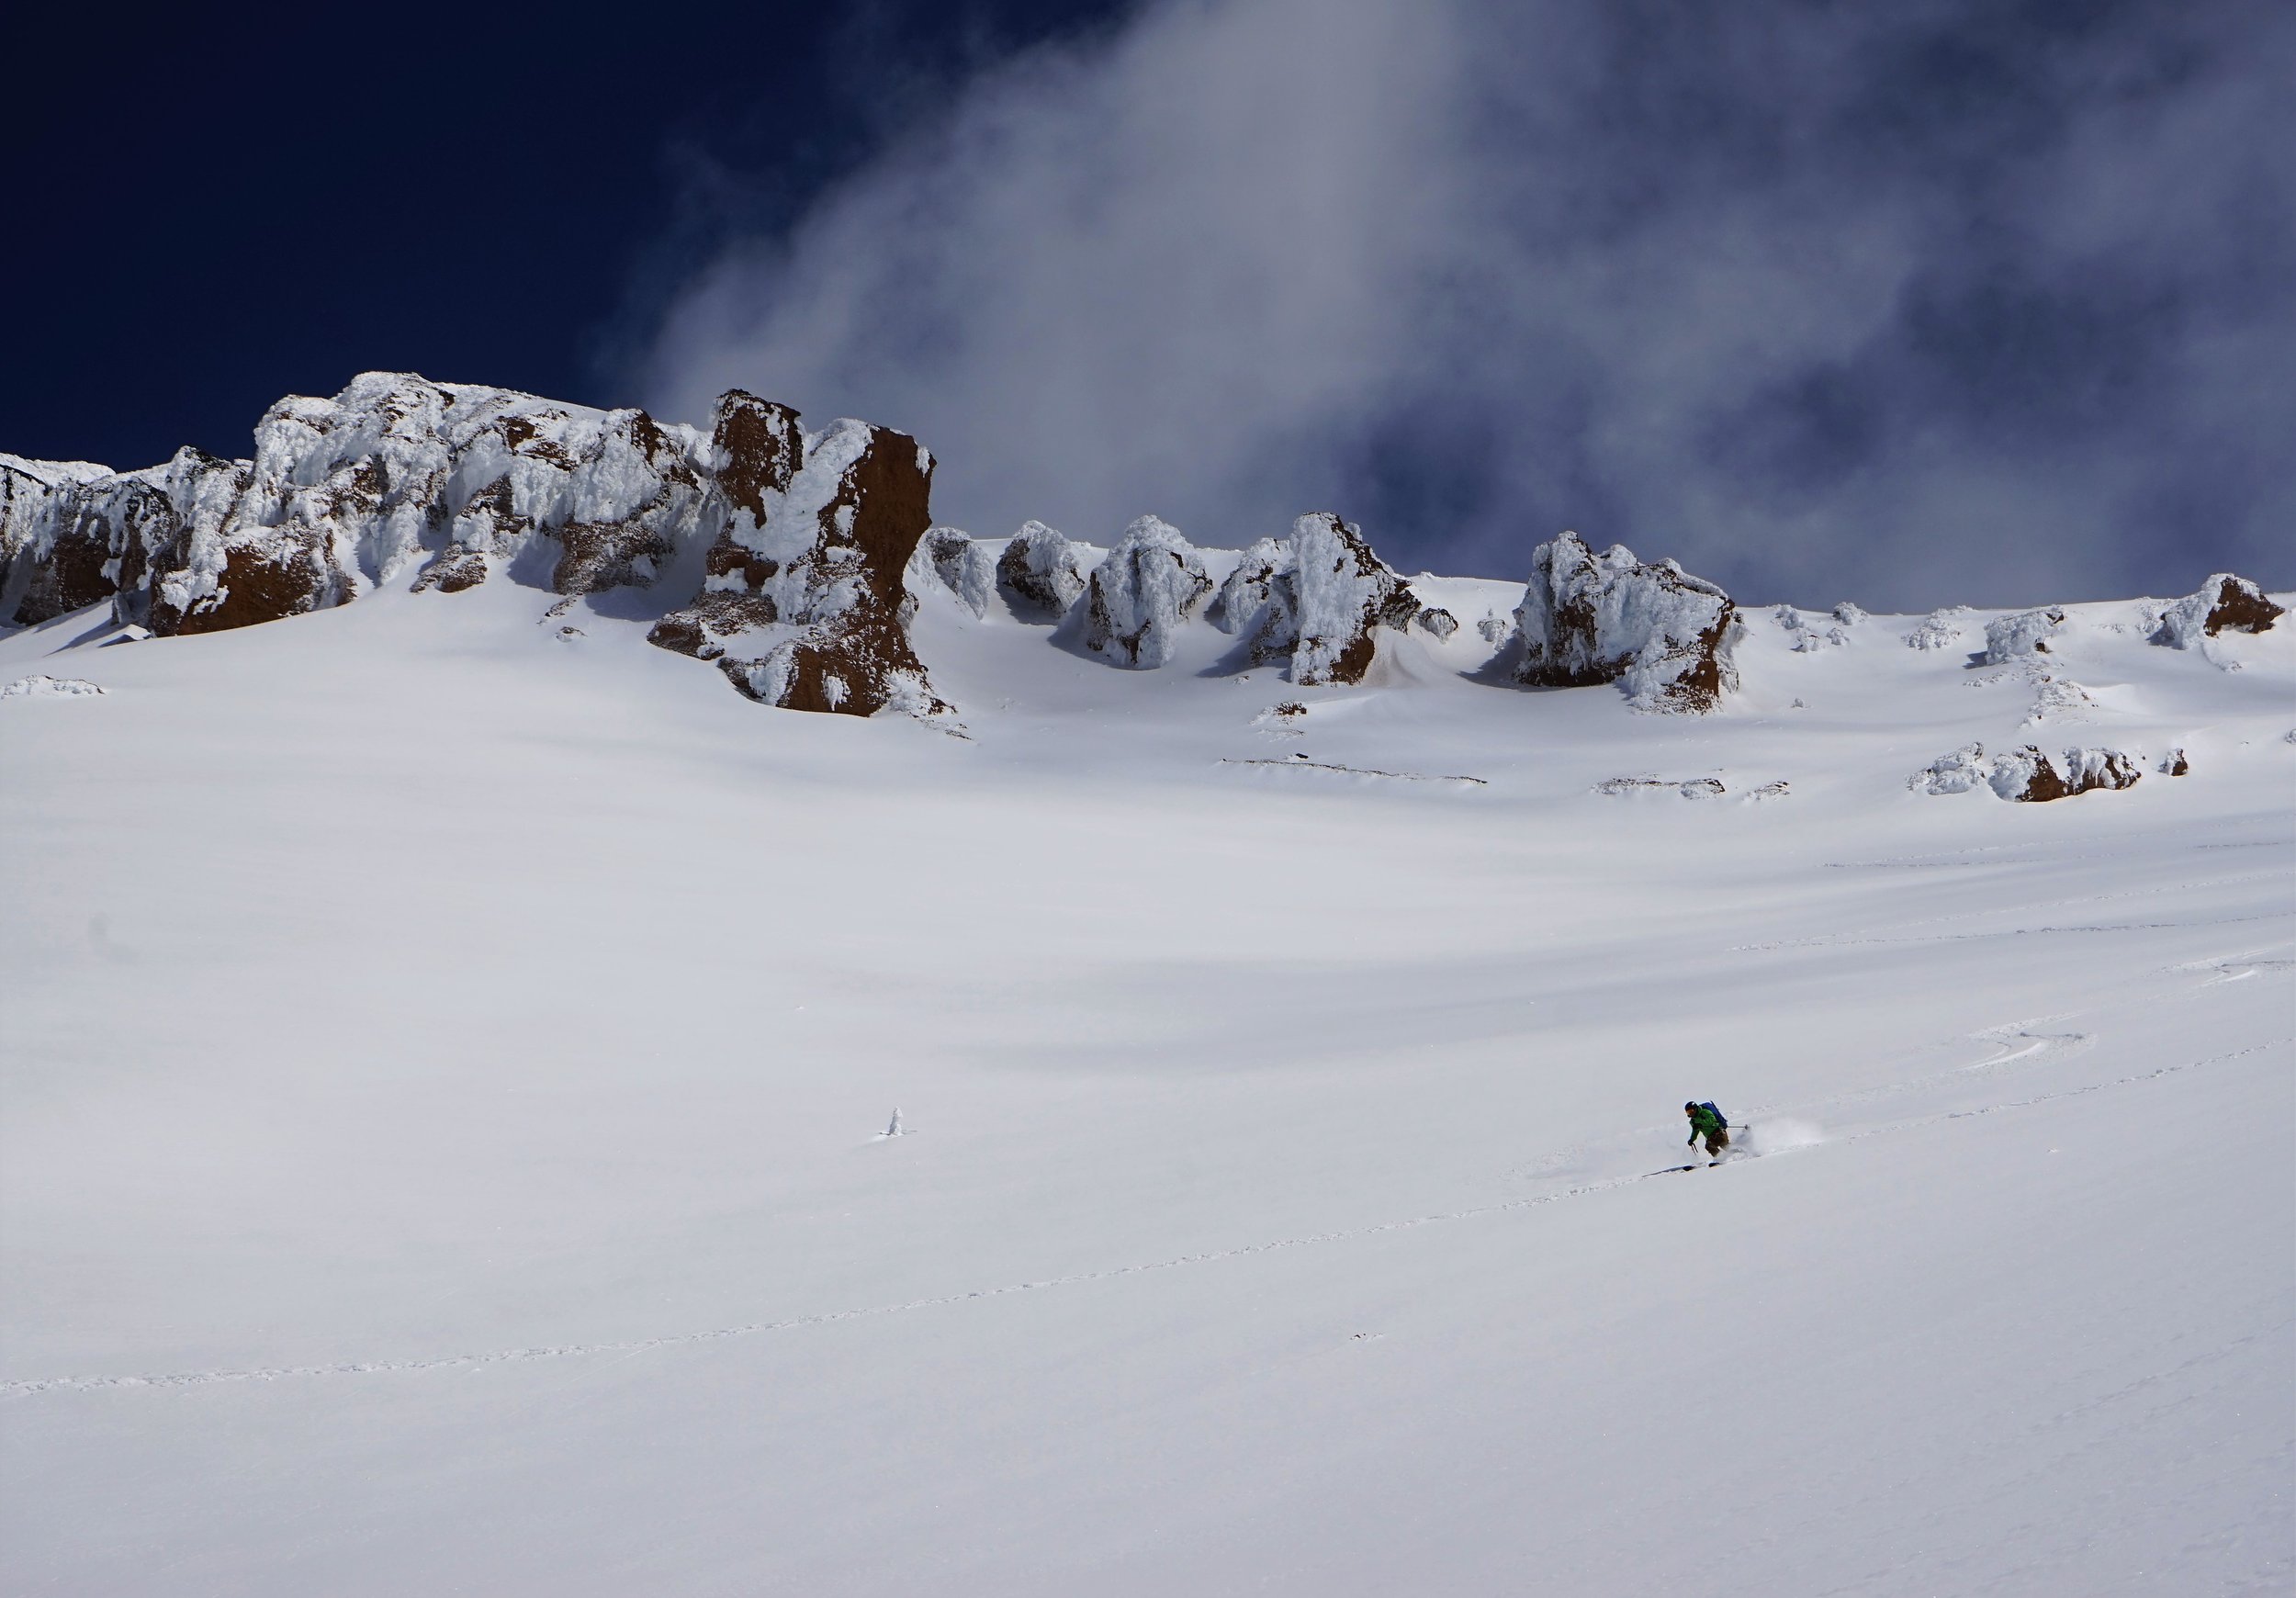 Skier enjoys the empty slopes of mt shasta